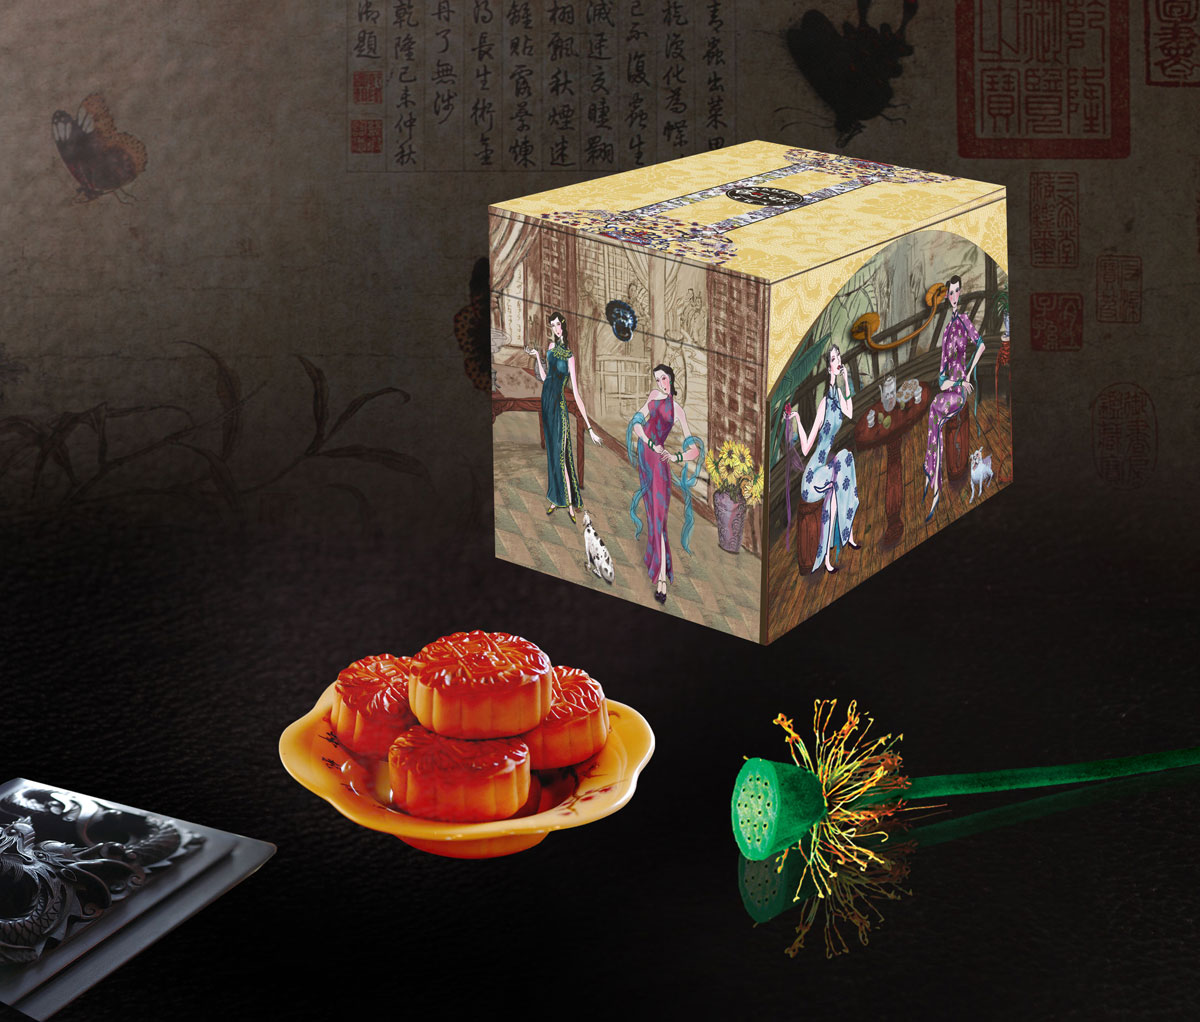 创意月饼包装盒设计欣赏_月饼包装袋设计_成都月饼盒设计